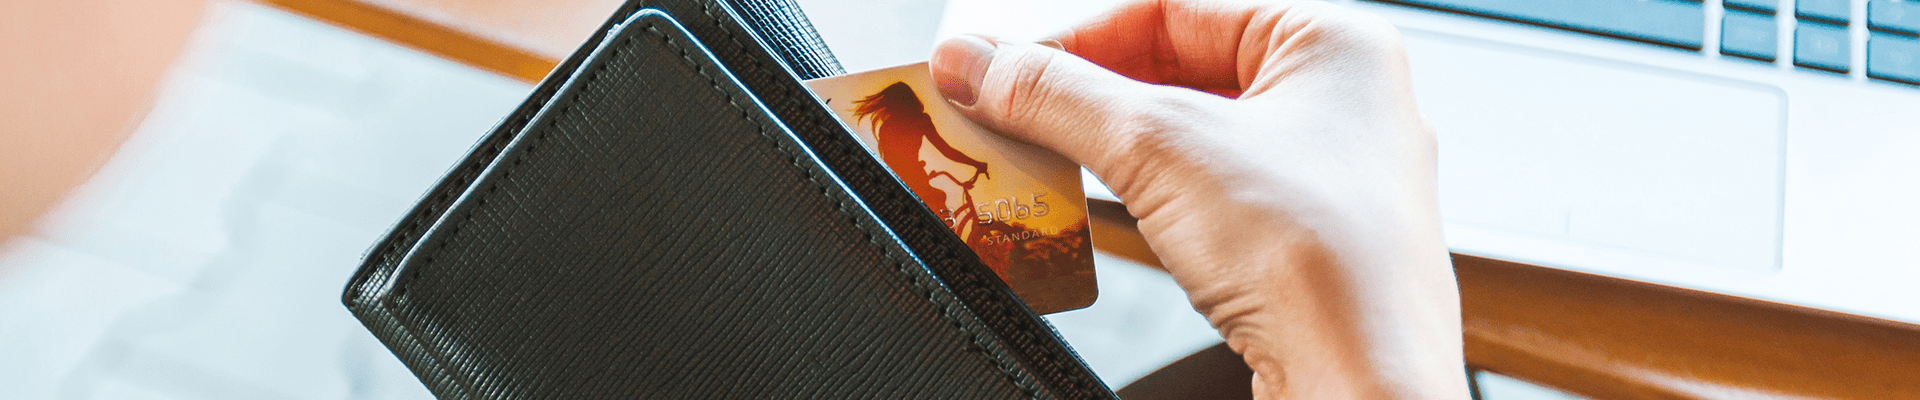 wallet and debit card